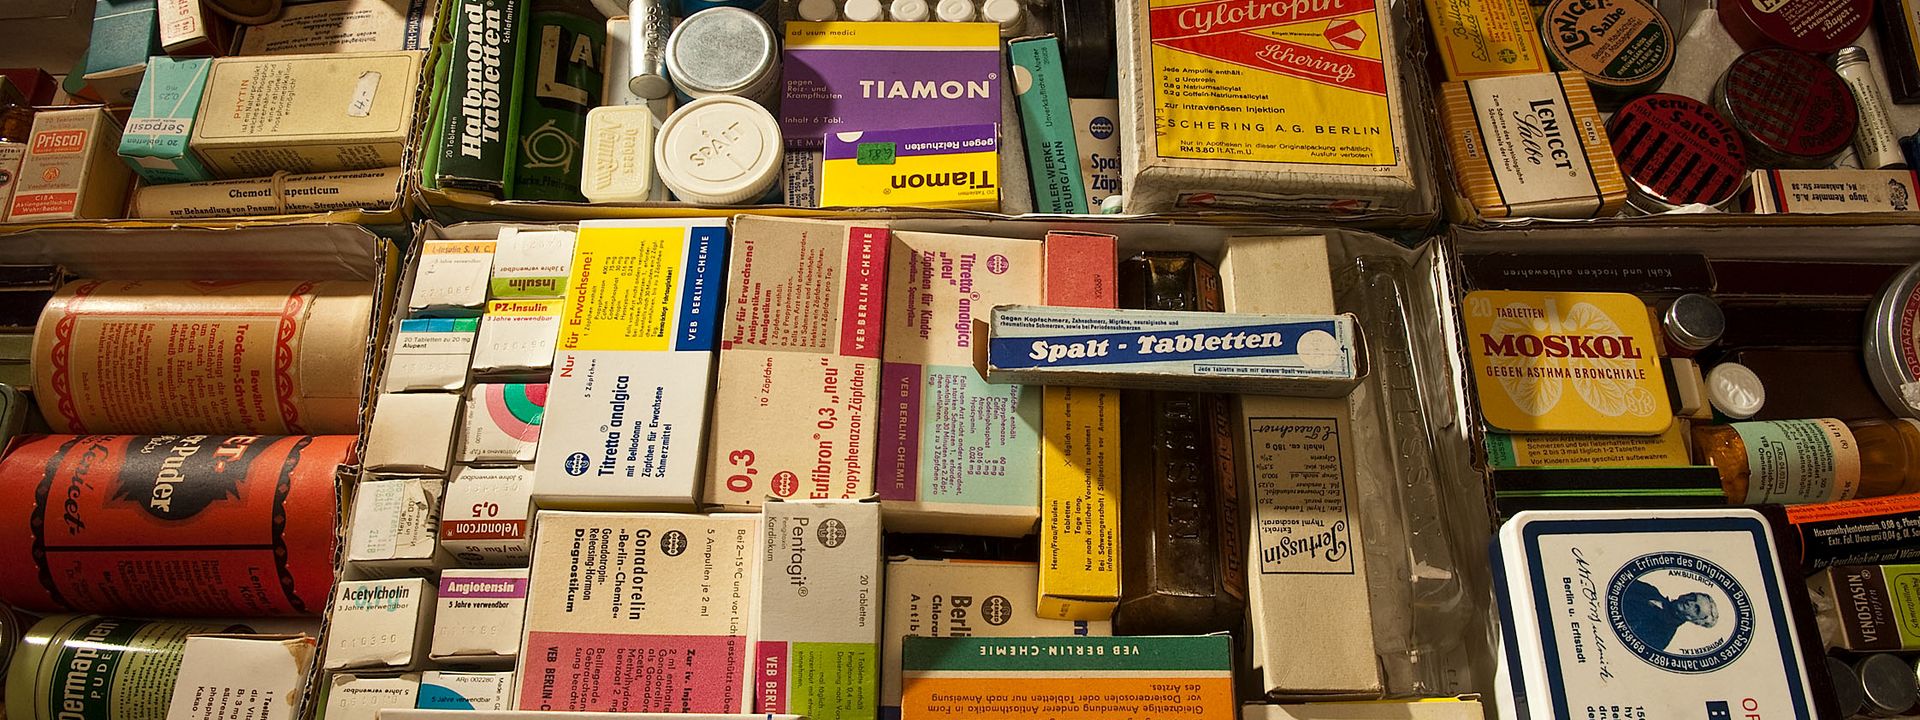 Historische Medikamentenschachteln, Röllchen und Dosen liegen dicht an dicht. Es sind bekannte Marken des alltäglichen Gebrauchs von Kopfschmerz- und Magenmitteln dabei.